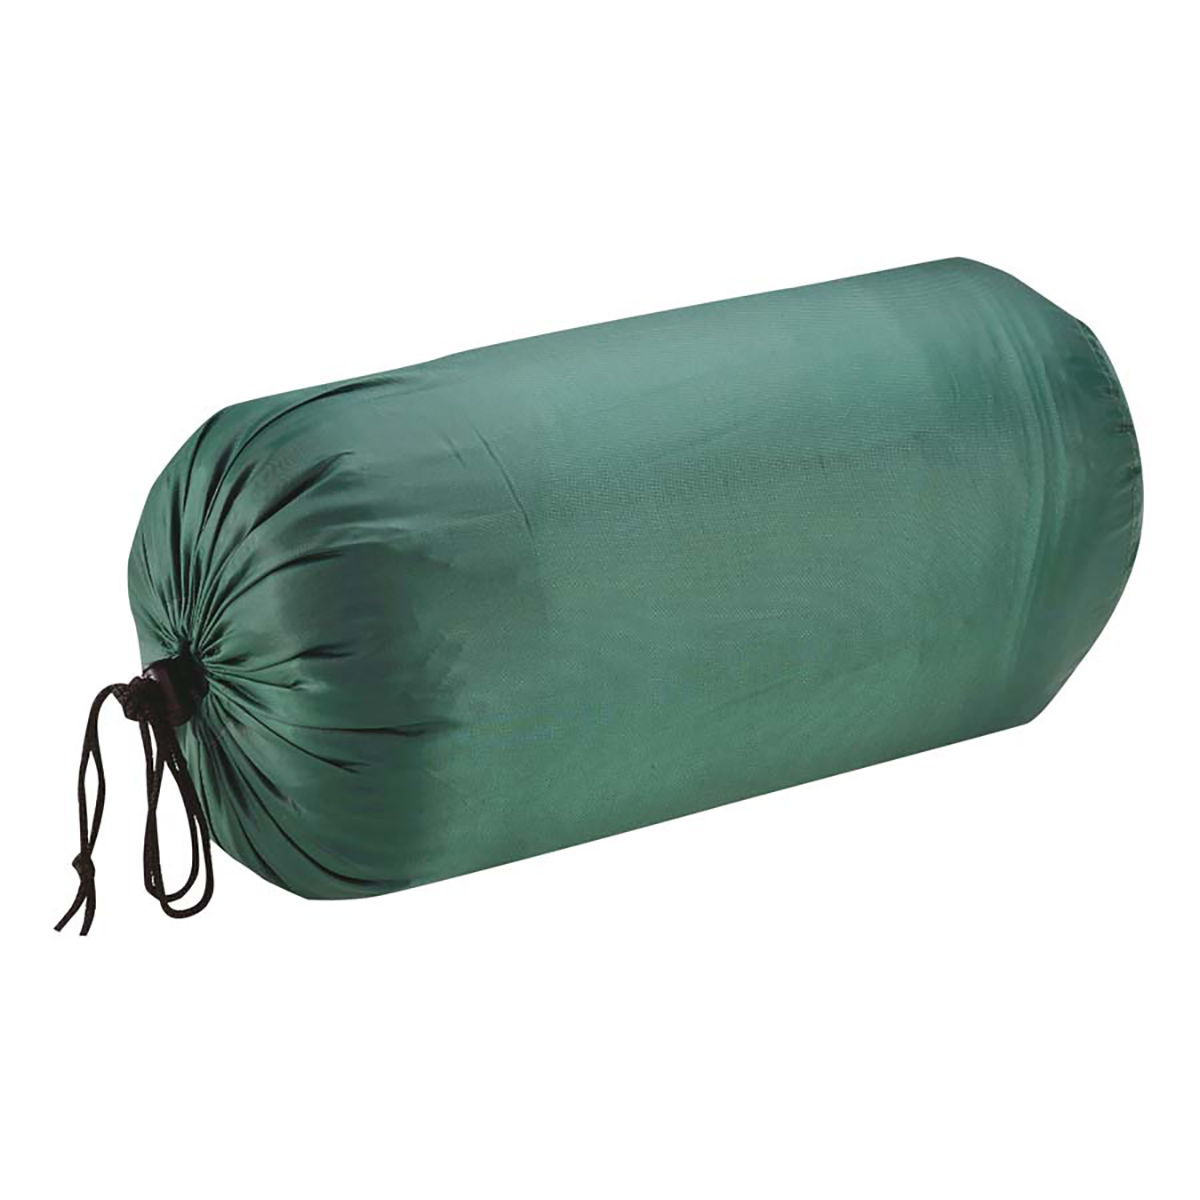 プレーリー 封筒型シュラフ(寝袋)600(グリーン) - キャプテンスタッグ